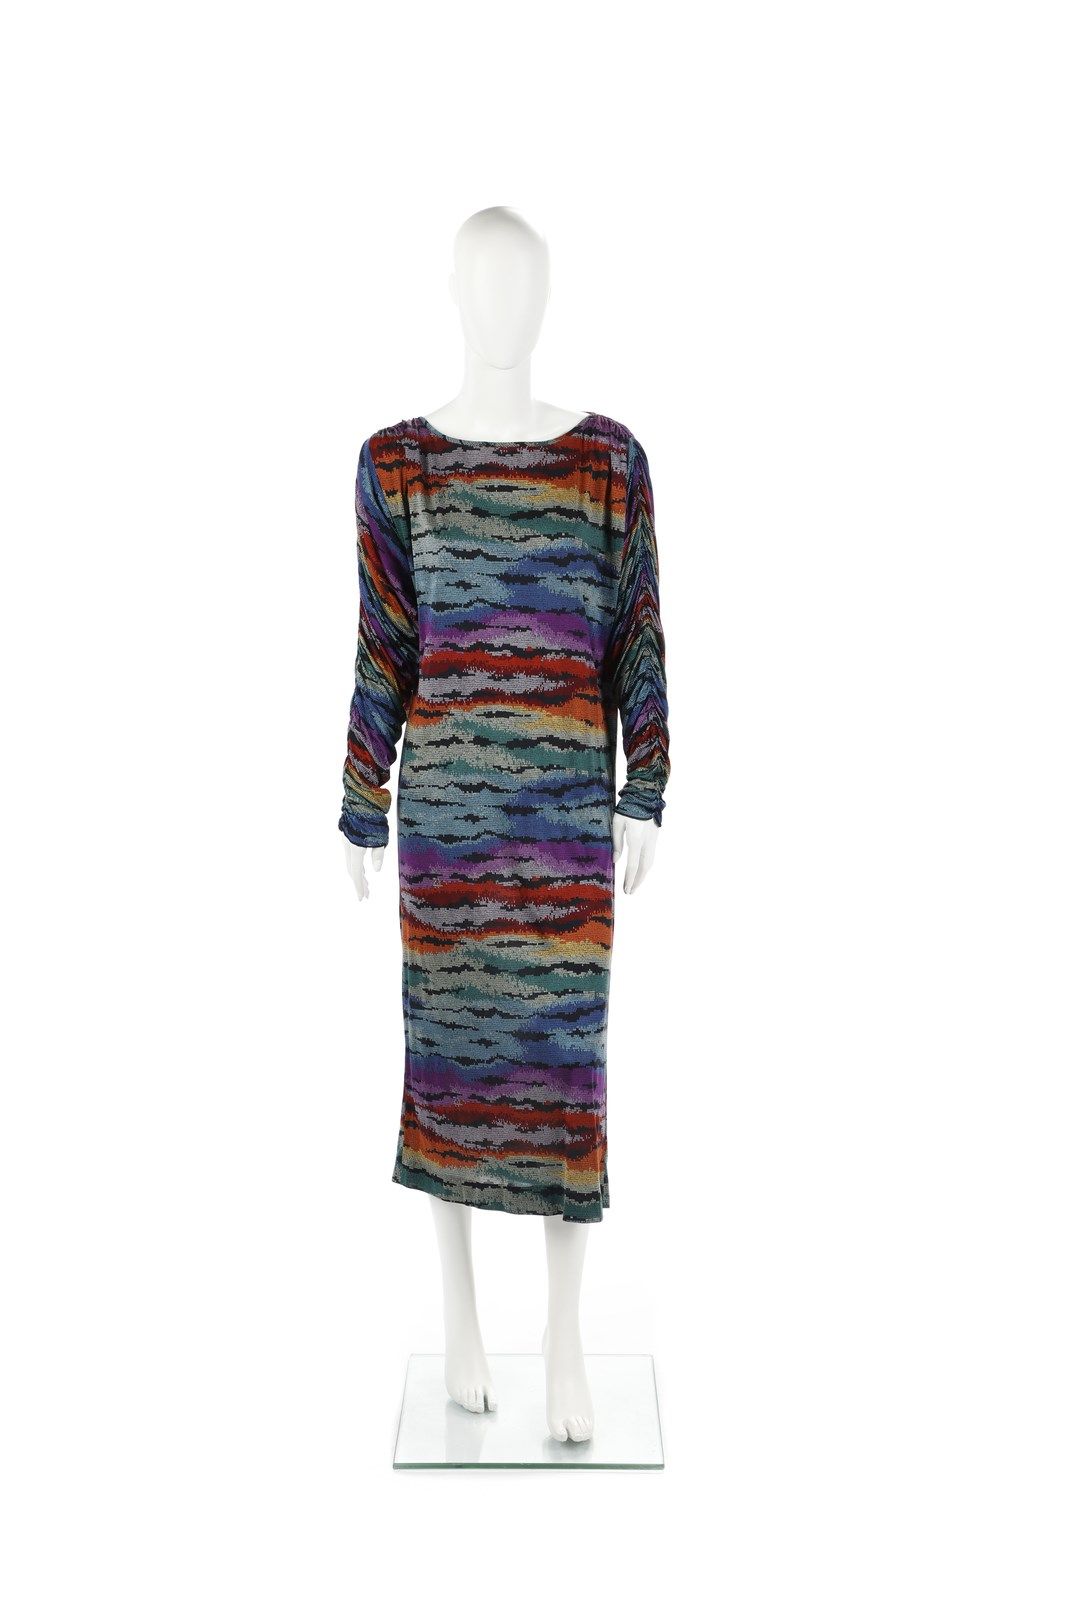 MISSONI Longuette dress in multicolored silk. Size 42/44 IT. 多色丝绸长裙。尺寸为42/44 IT。&hellip;